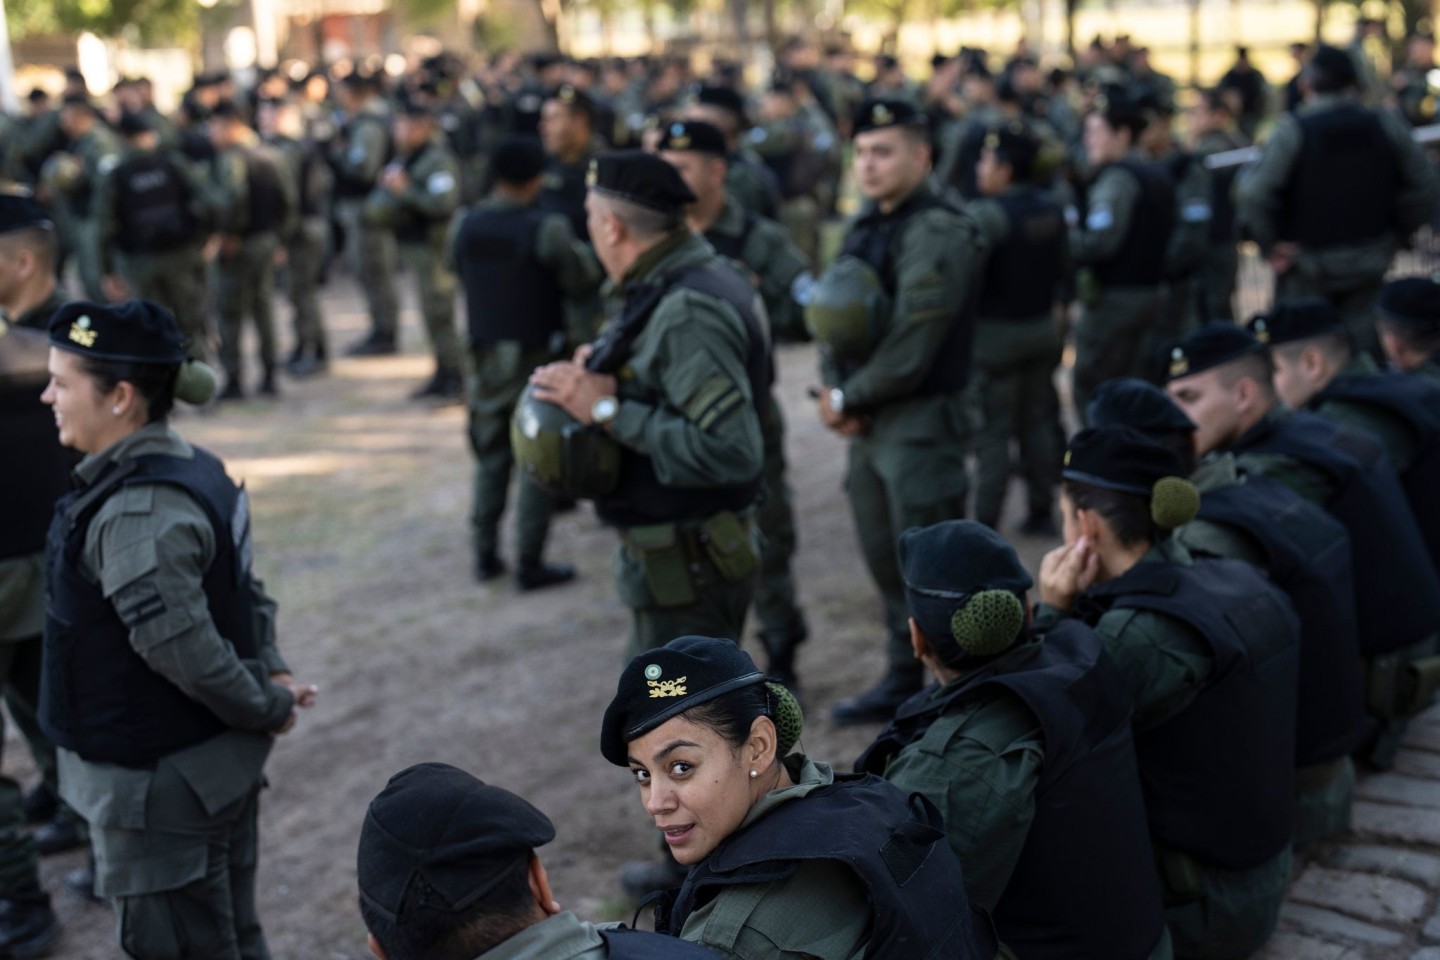 Nach der jüngsten Welle der Gewalt in Rosario hat die argentinische Regierung eine Sicherheitsoffensive eingeleitet. Am Mittwoch trafen 300 zusätzliche Bundespolizisten ein.